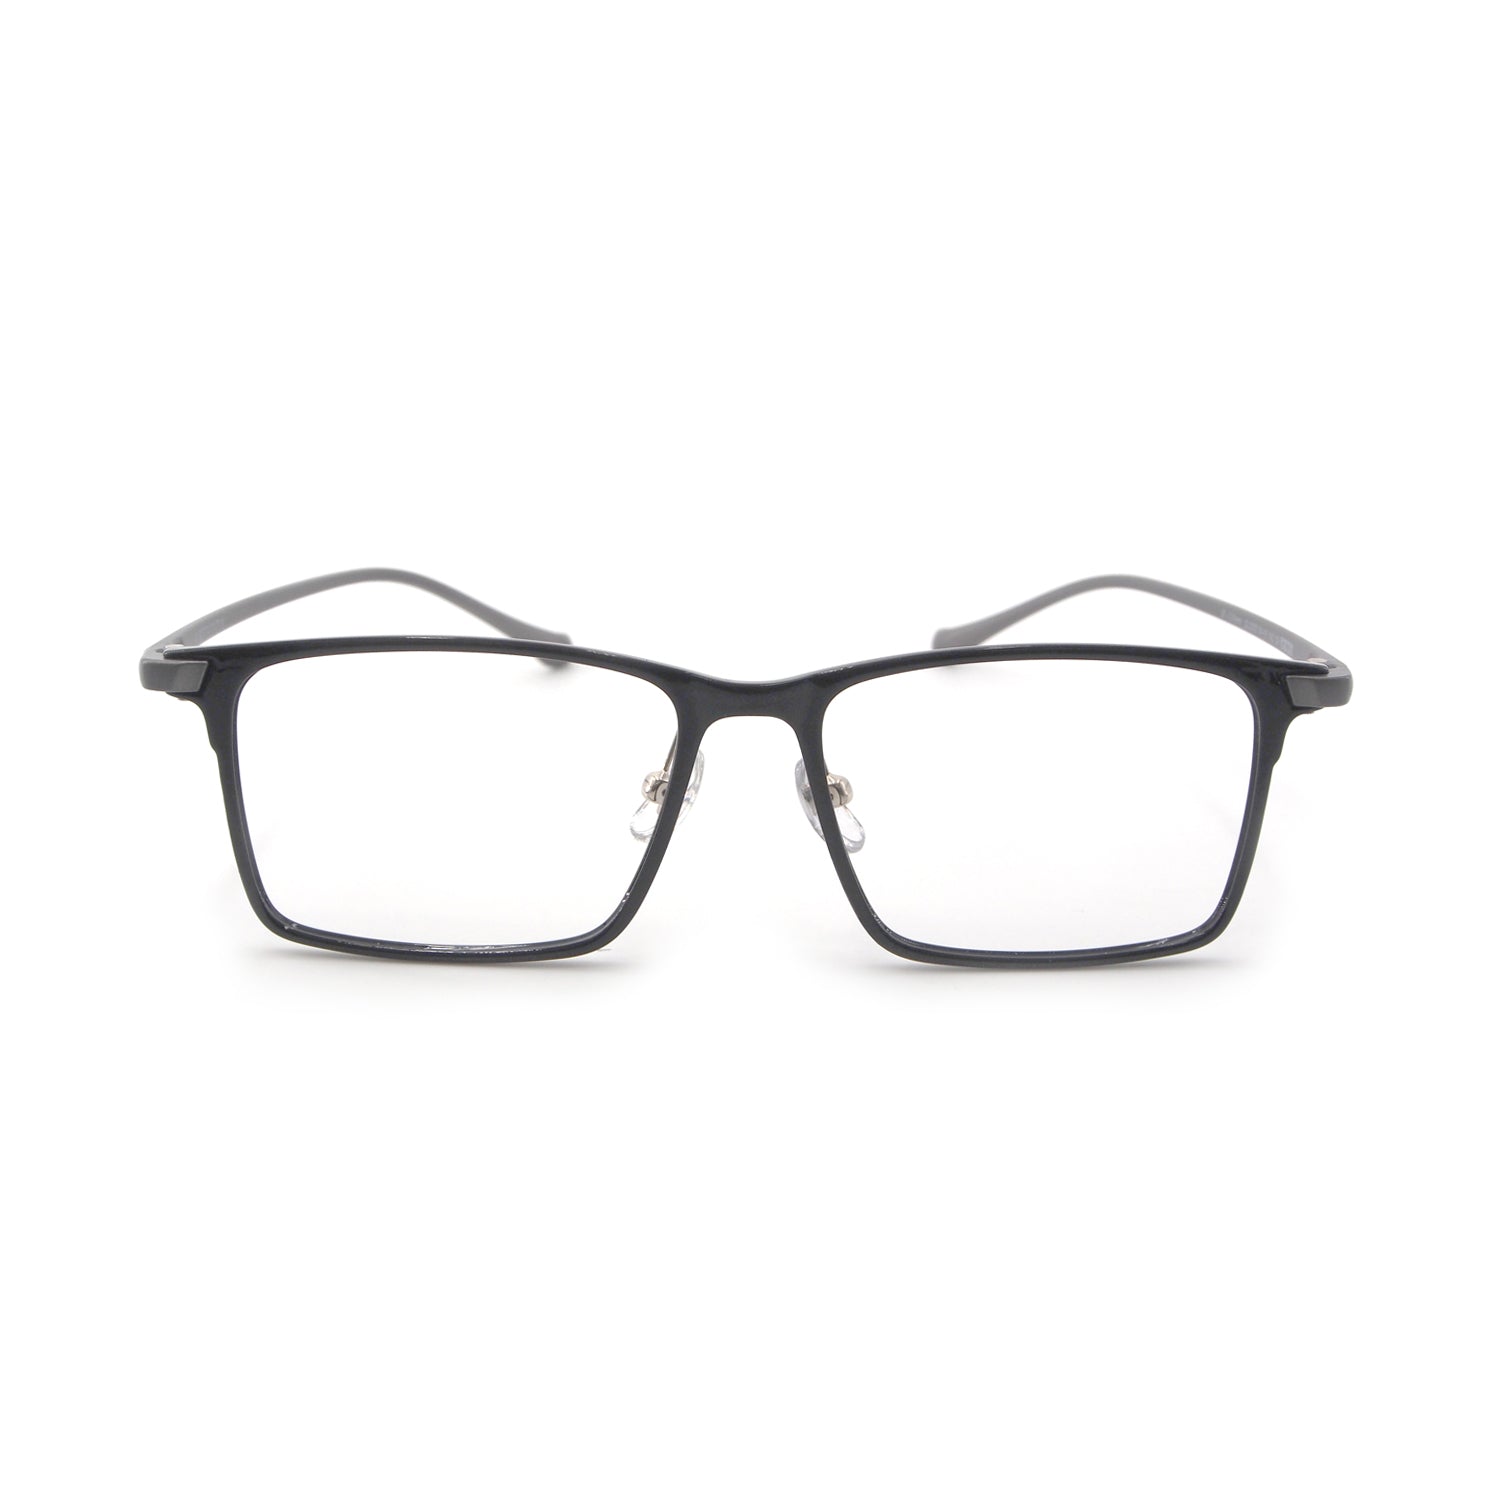 Tempest in Anchor Grey Eyeglasses - sightonomy